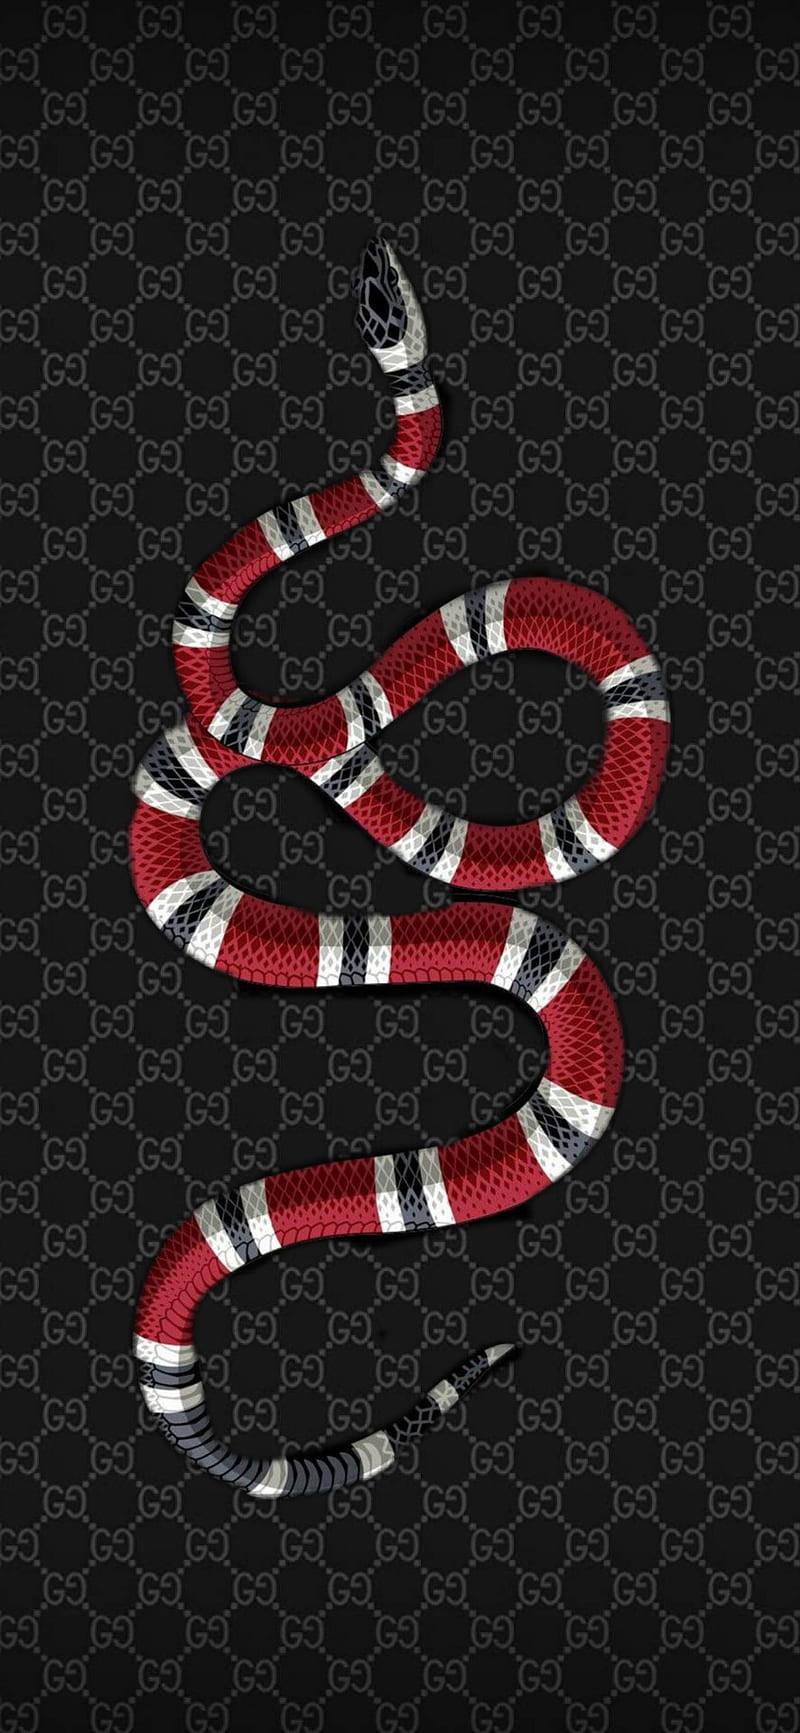 Cùng đến với Gucci Snake trên hình nền điện thoại của bạn đúng không? Với độ phân giải cao, bạn có thể thấy được một cách cực kỳ chi tiết vẻ đẹp huyền bí của con rắn trên nền đen tuyền của Gucci. Nó chắc chắn sẽ khiến người xem không khỏi xuýt xoa.